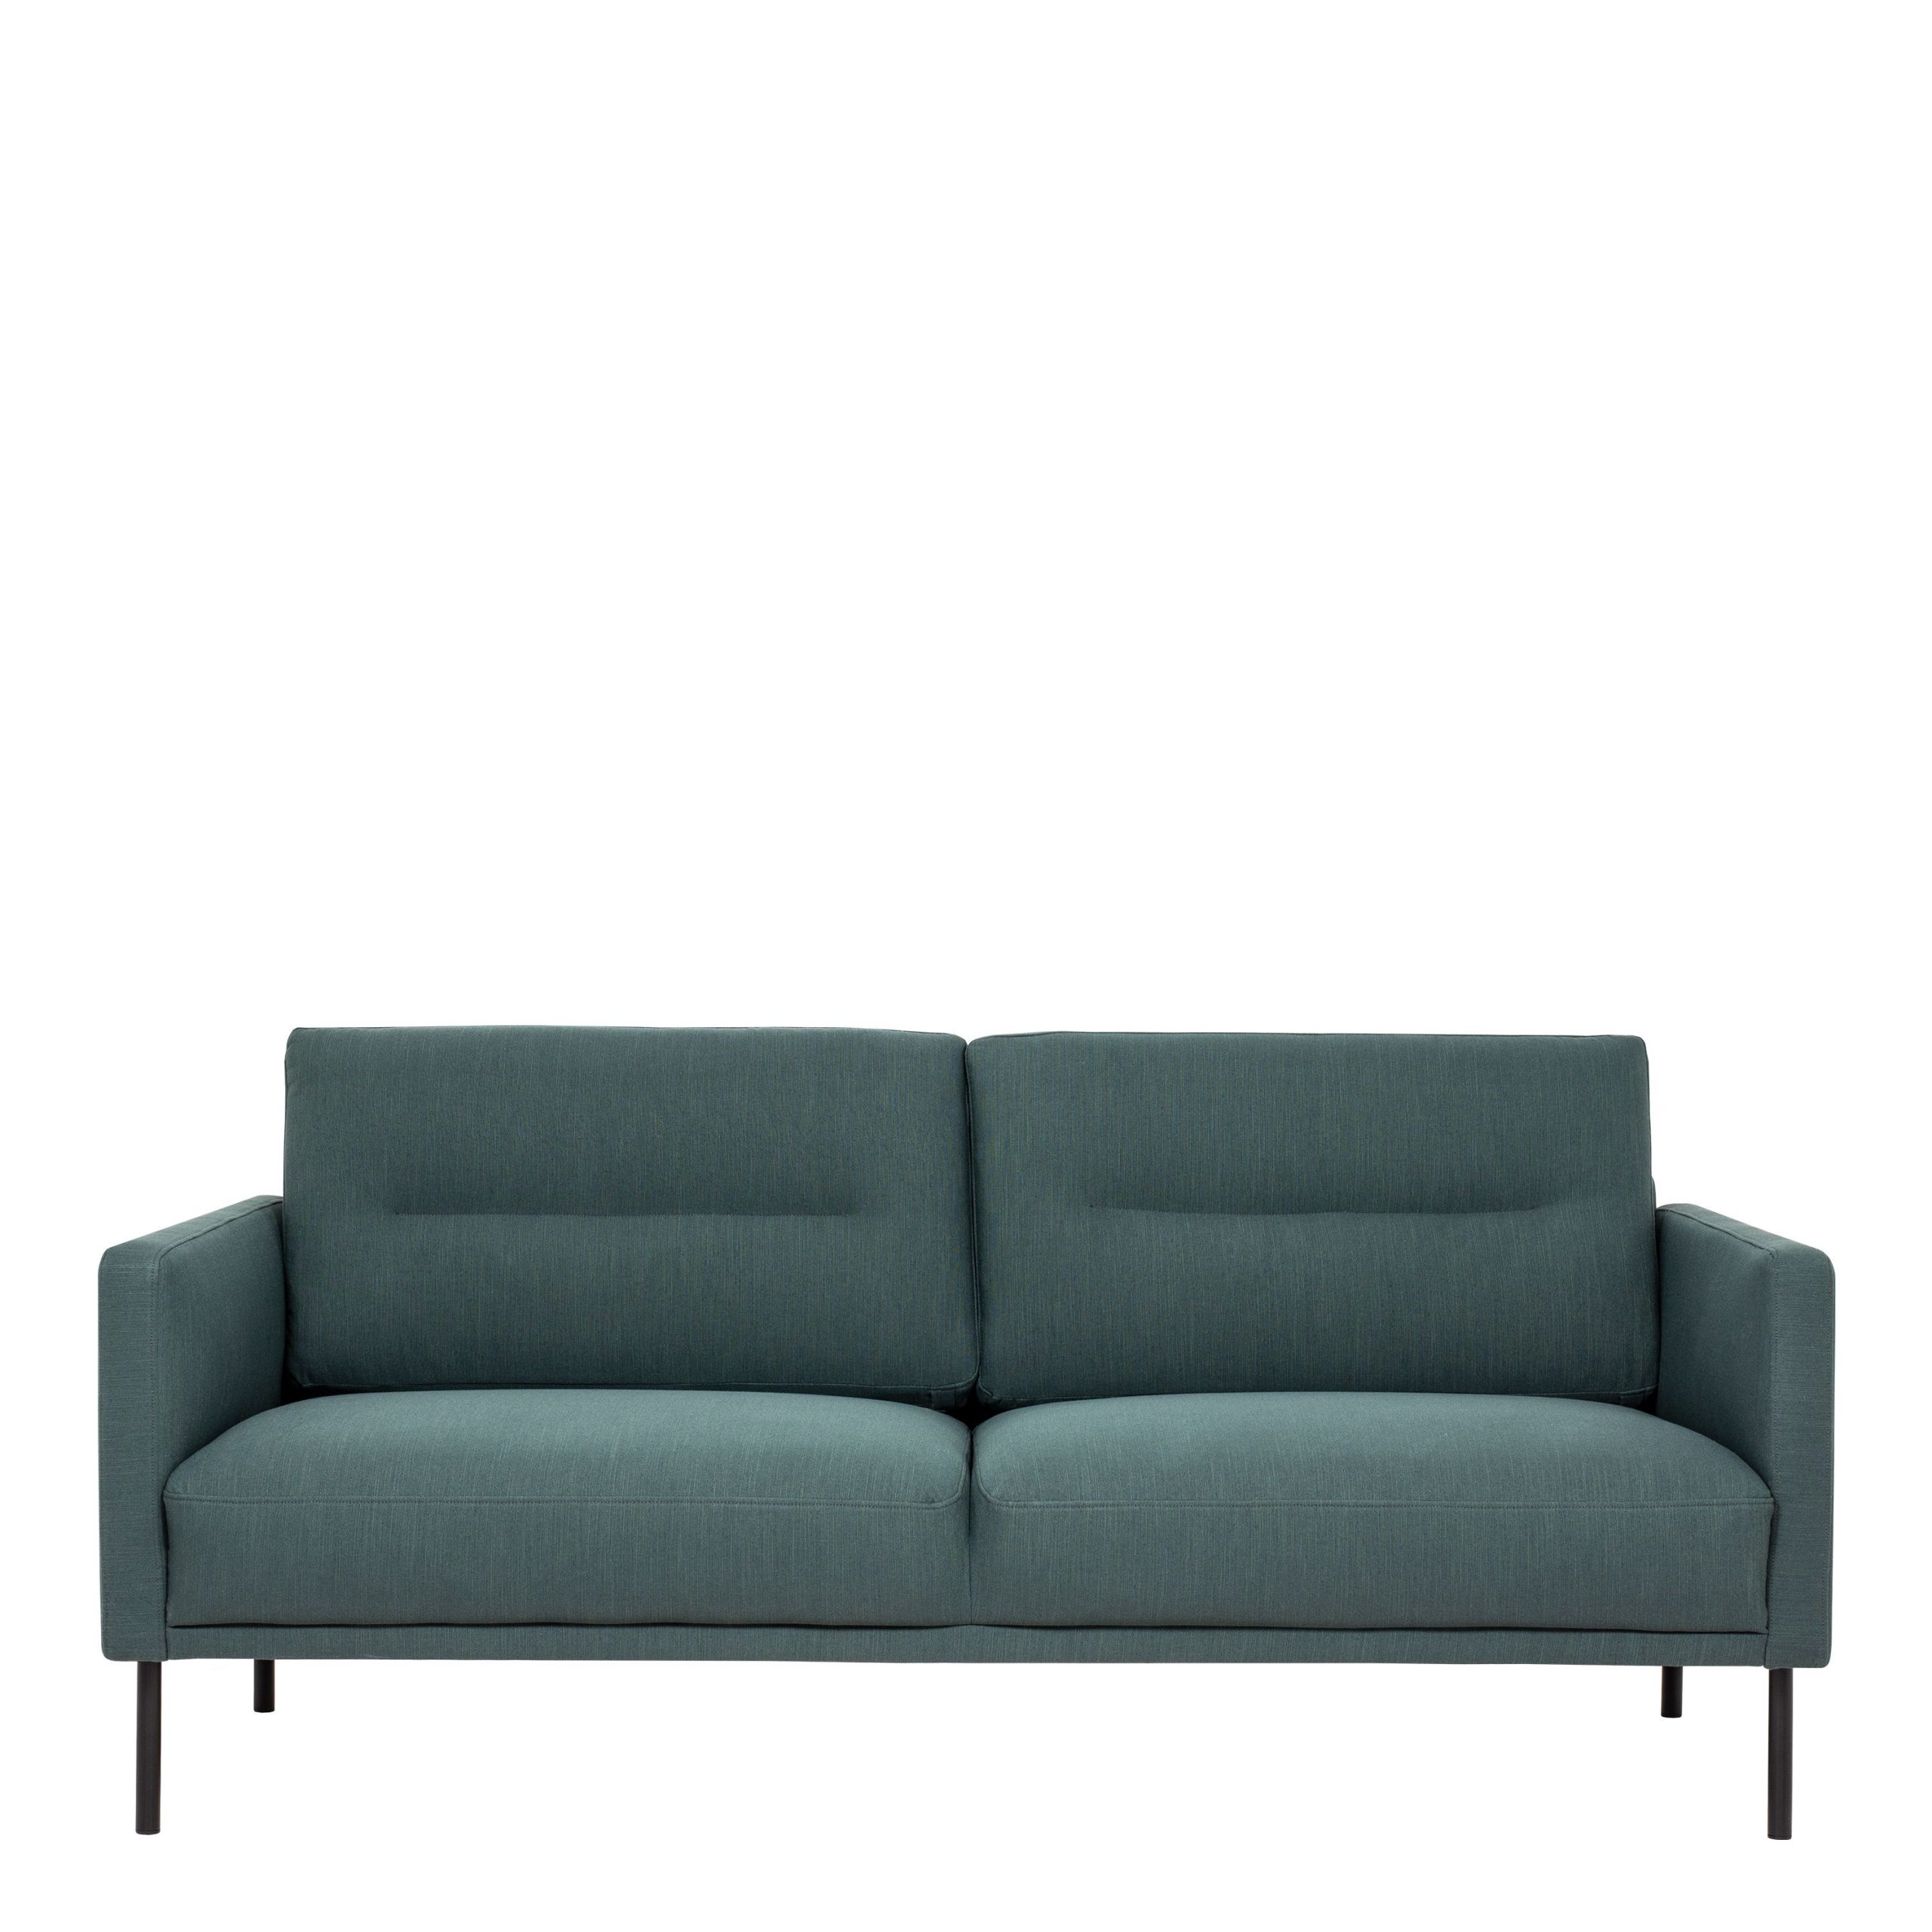 Larvik 2.5 Seater Sofa – Dark Green, Black Legs